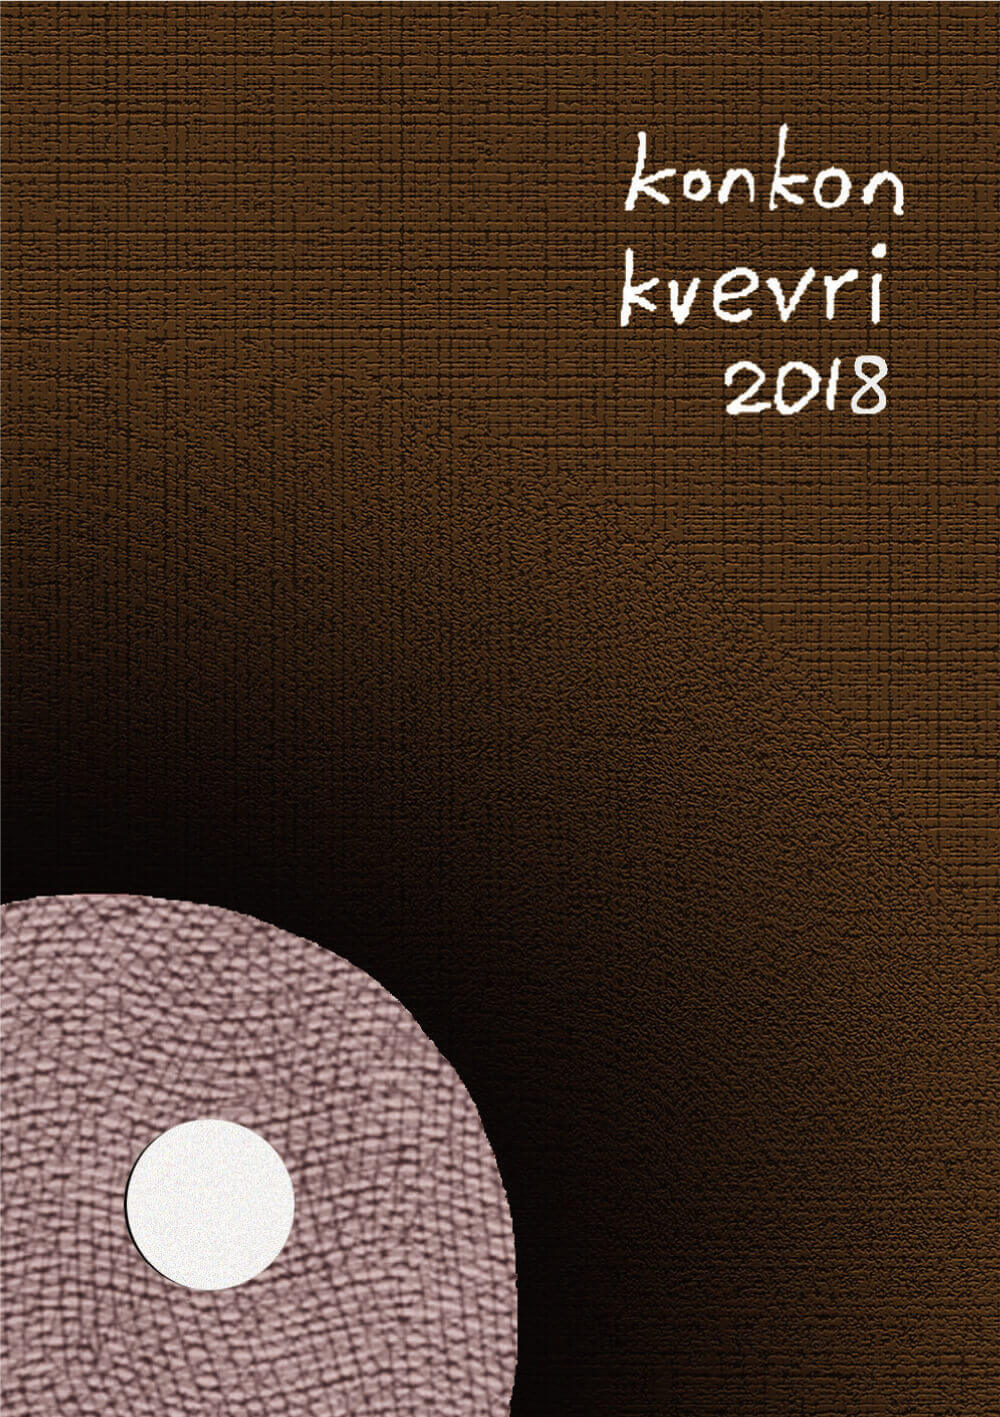 コンコン クヴェヴリ 2018